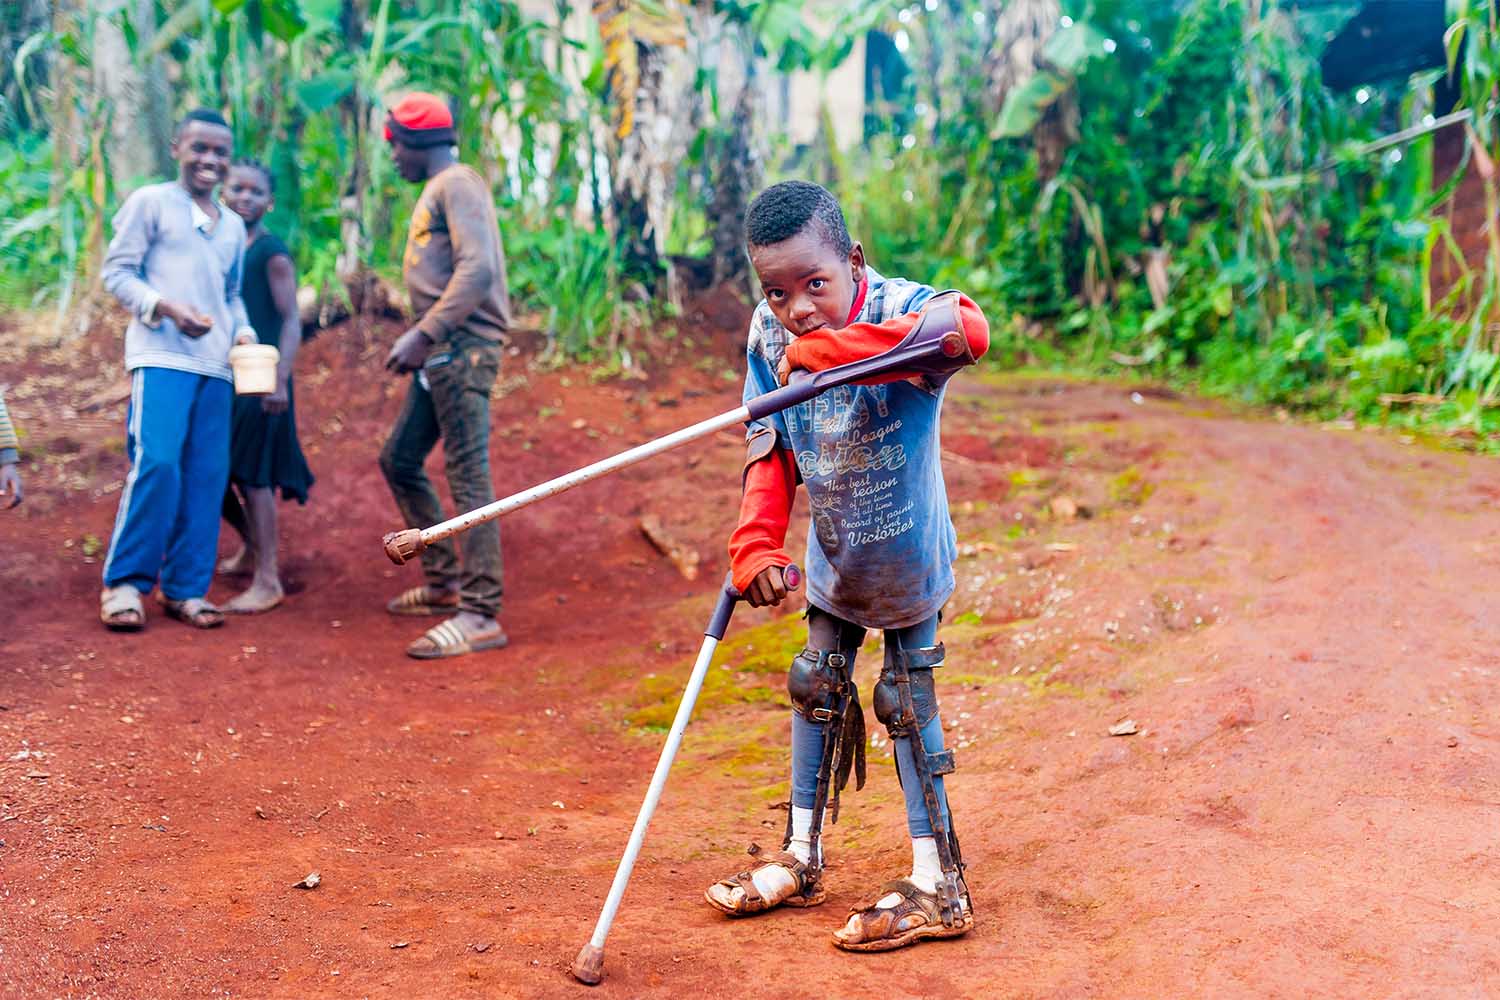 ילד חולה פוליו בקמרון. 564 מקרים באפריקה בשנה החולפת (צילום: davide bonaldo/Shutterstock)